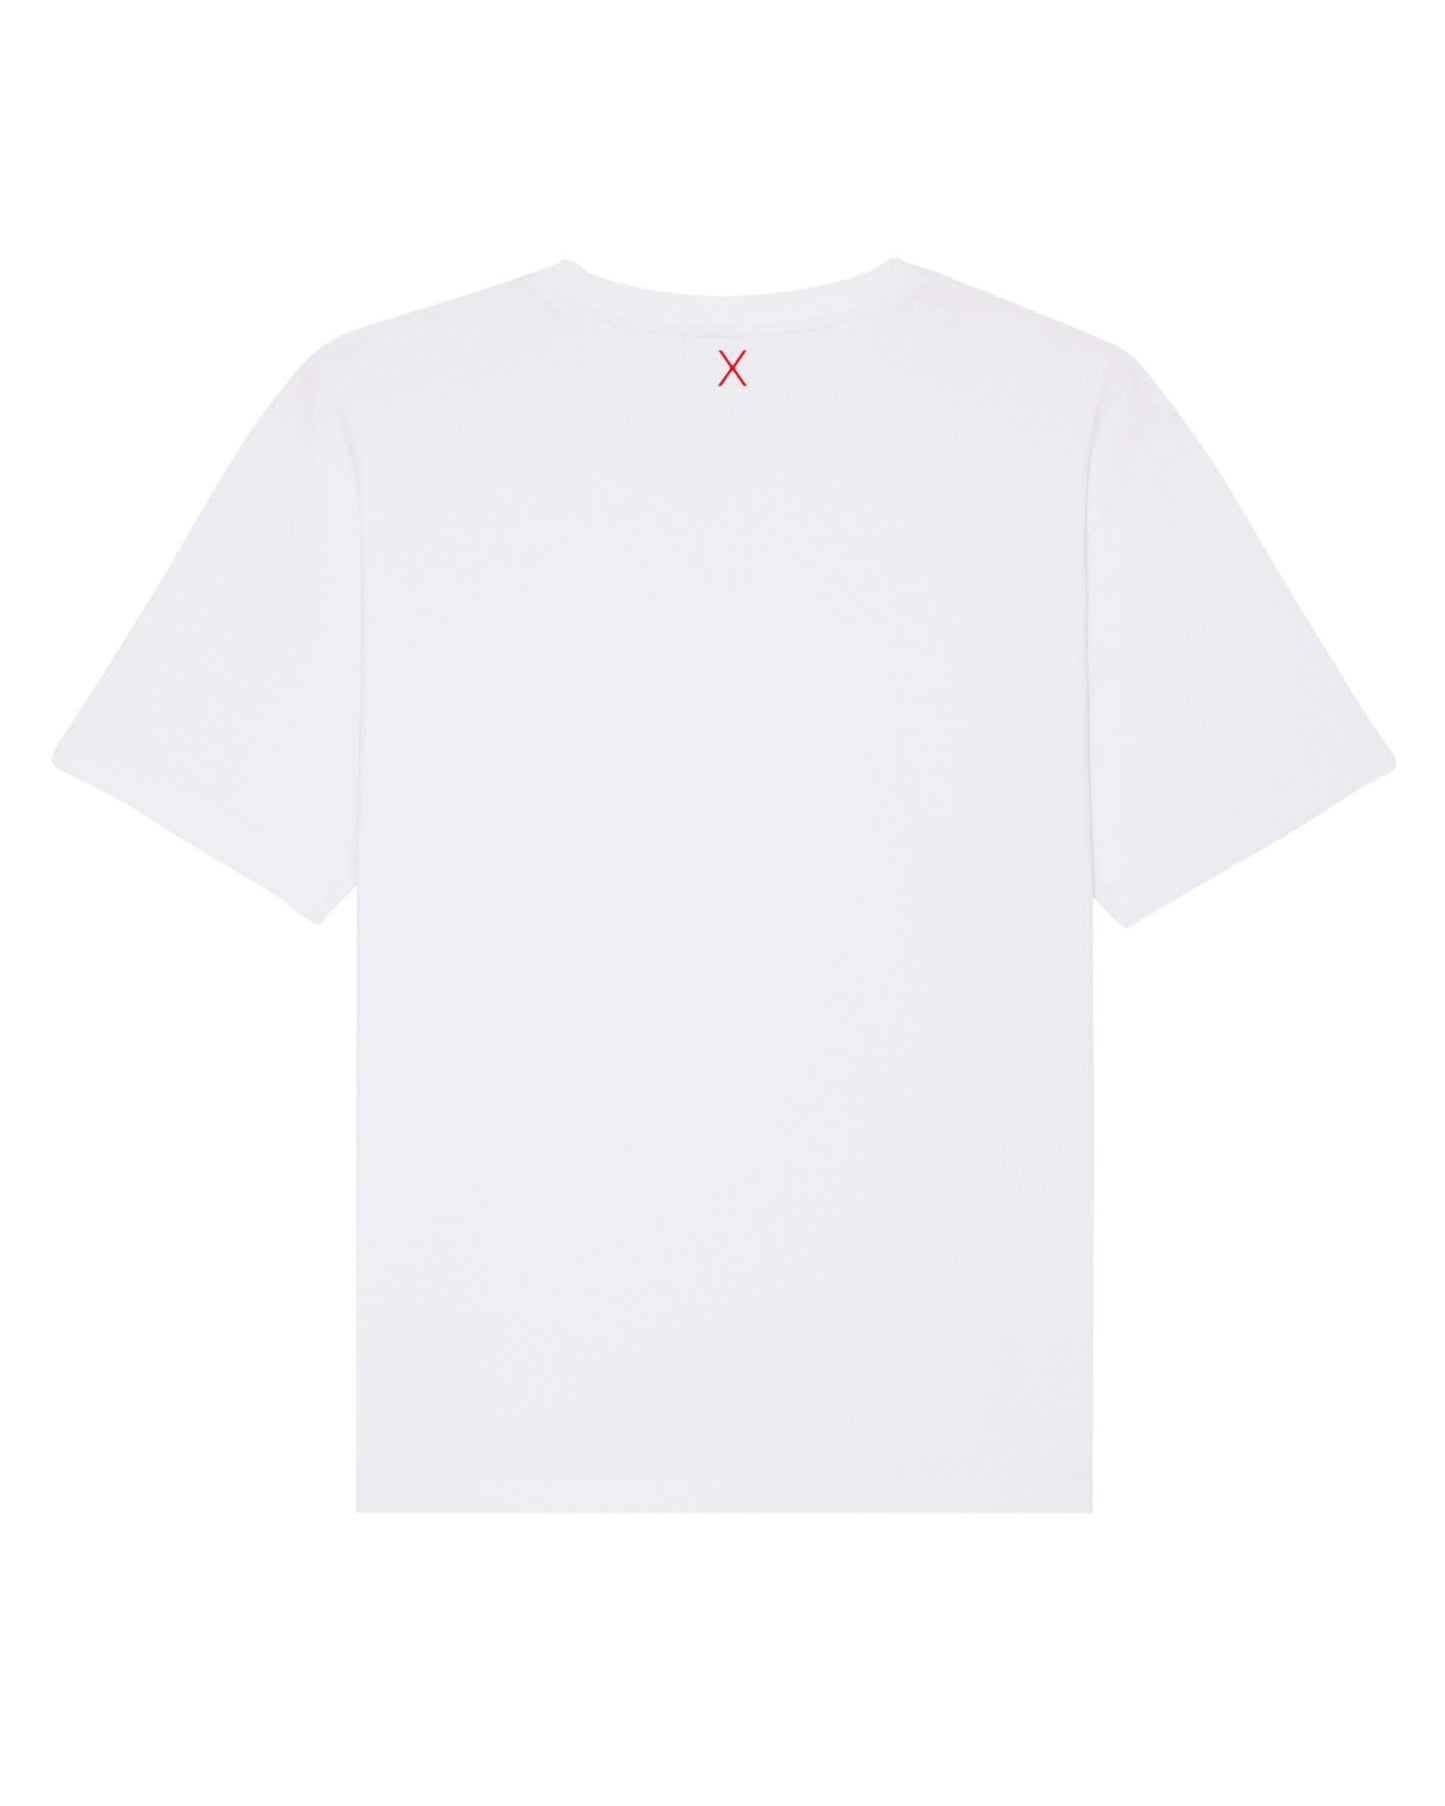 Produktbild eines weißen T-Shirt (Rückseite). Mittig, direkt unter dem Nackensaum ist das ikonische Extra "X" in rot.